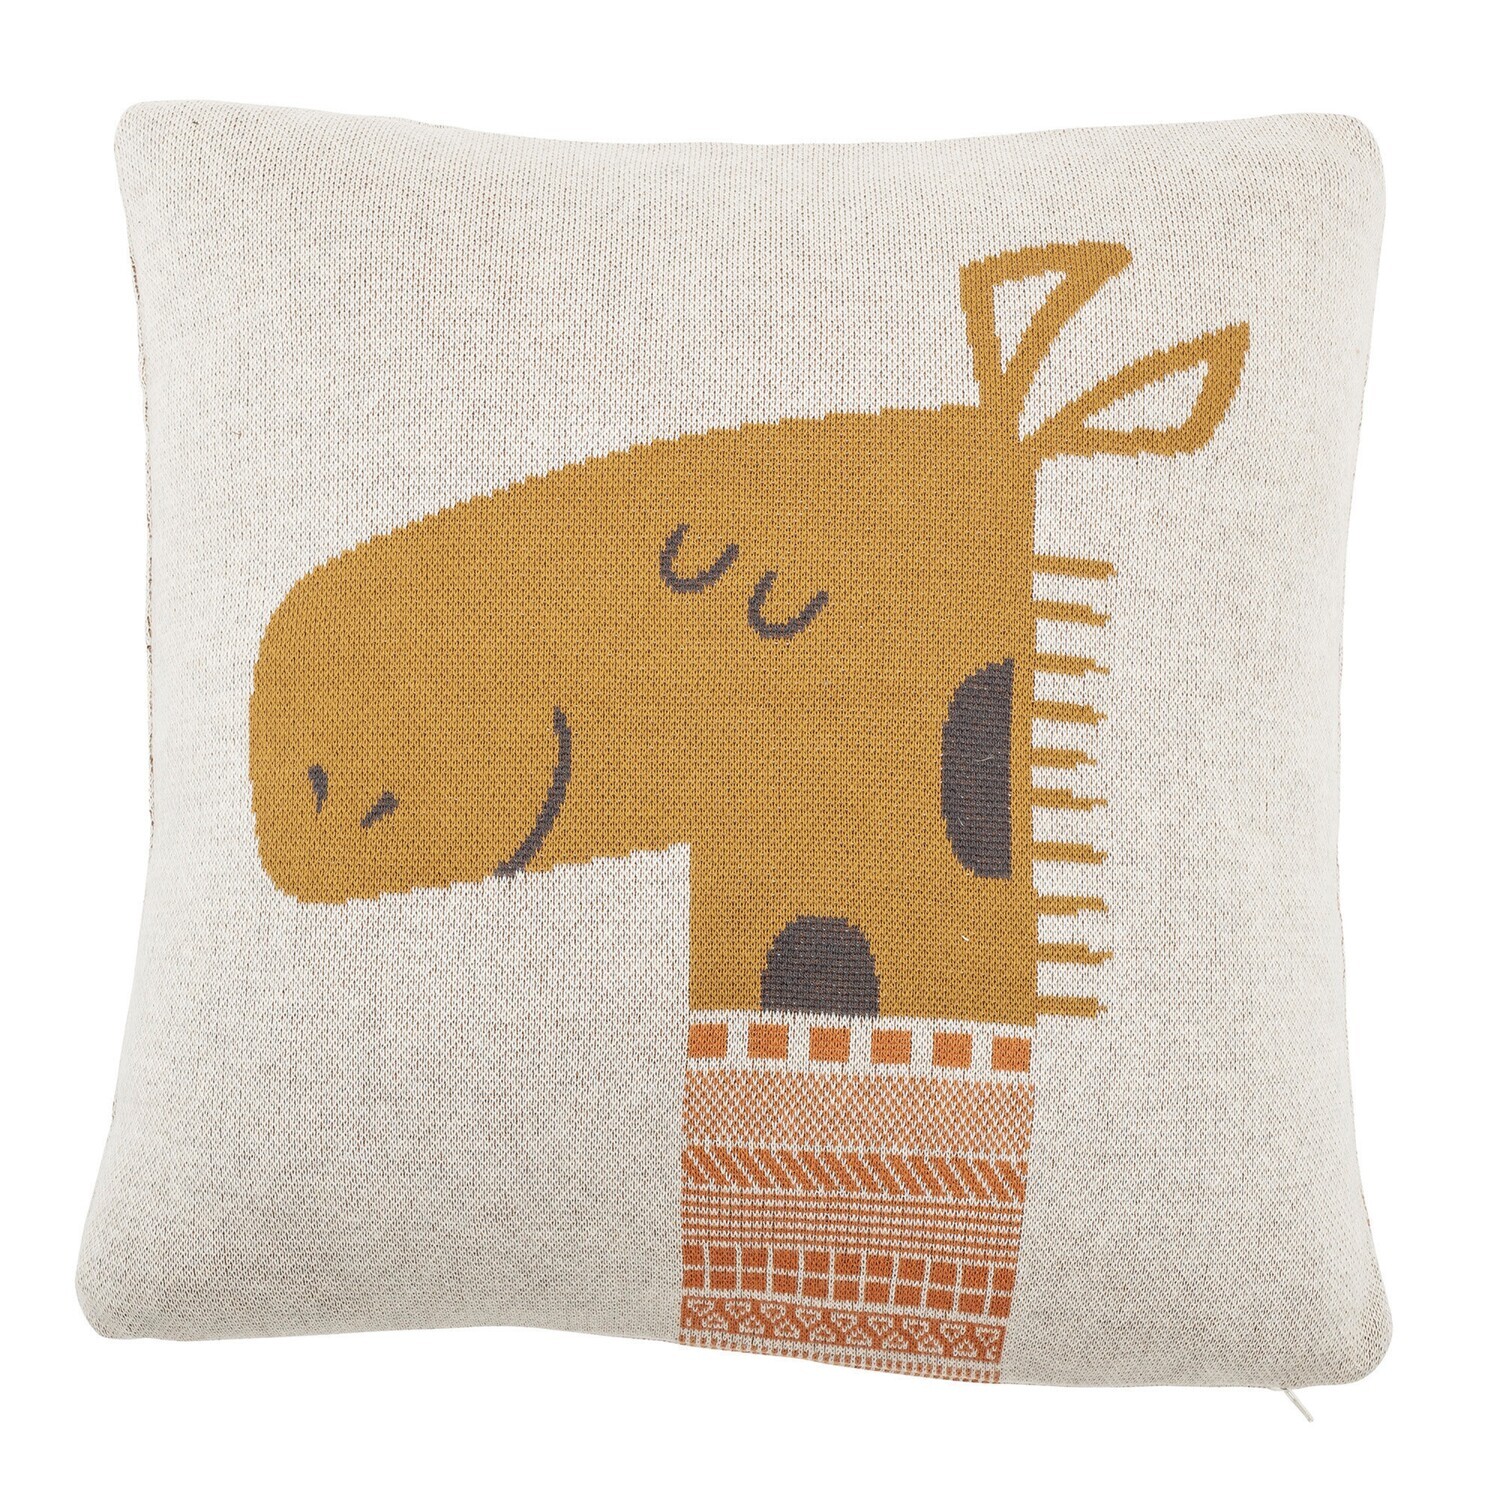 Pillow - Giraffe Cotton Knit